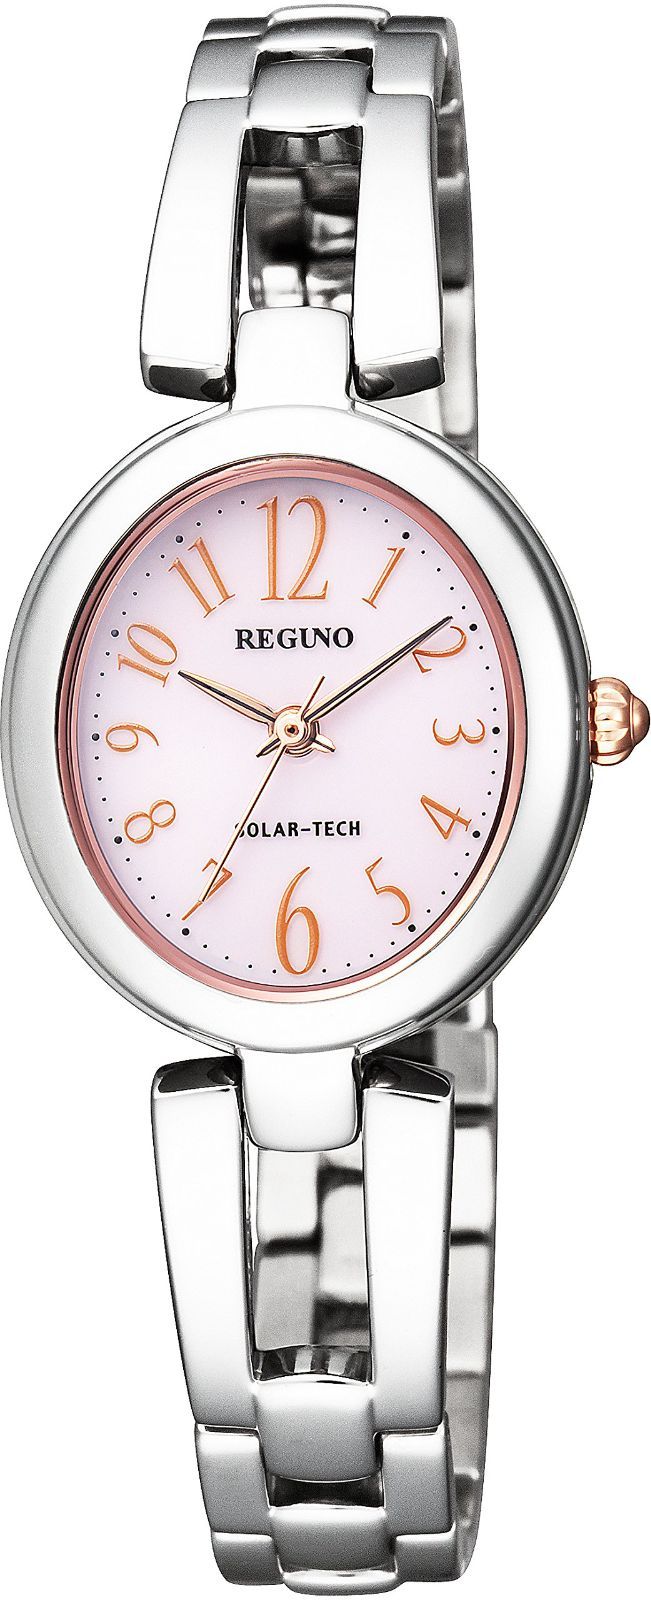 【特価セール】ソーラーテック レディス レグノ ブレスレット 腕時計 KP1-6